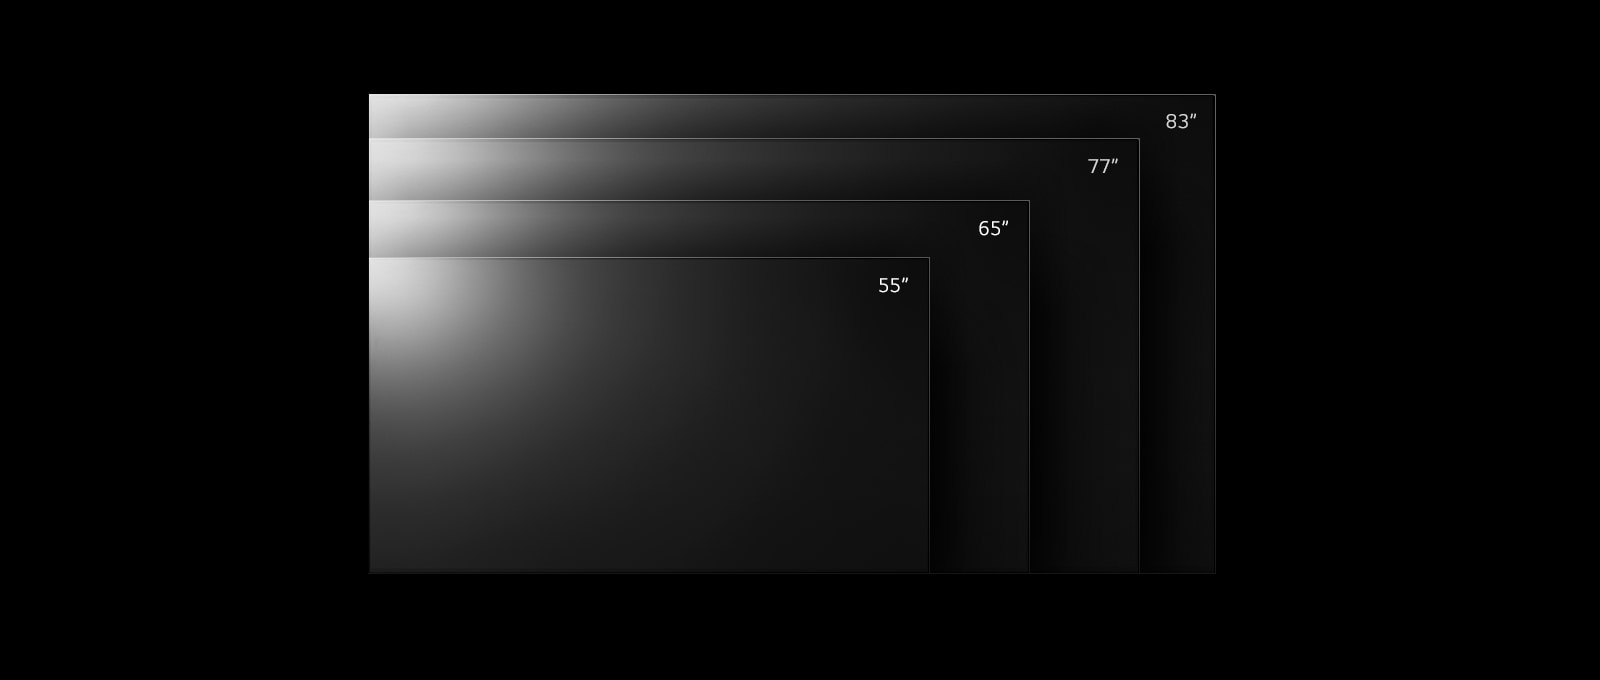 LG OLED C2 TV termékcsalád 42 colostól 83 colos méretekig